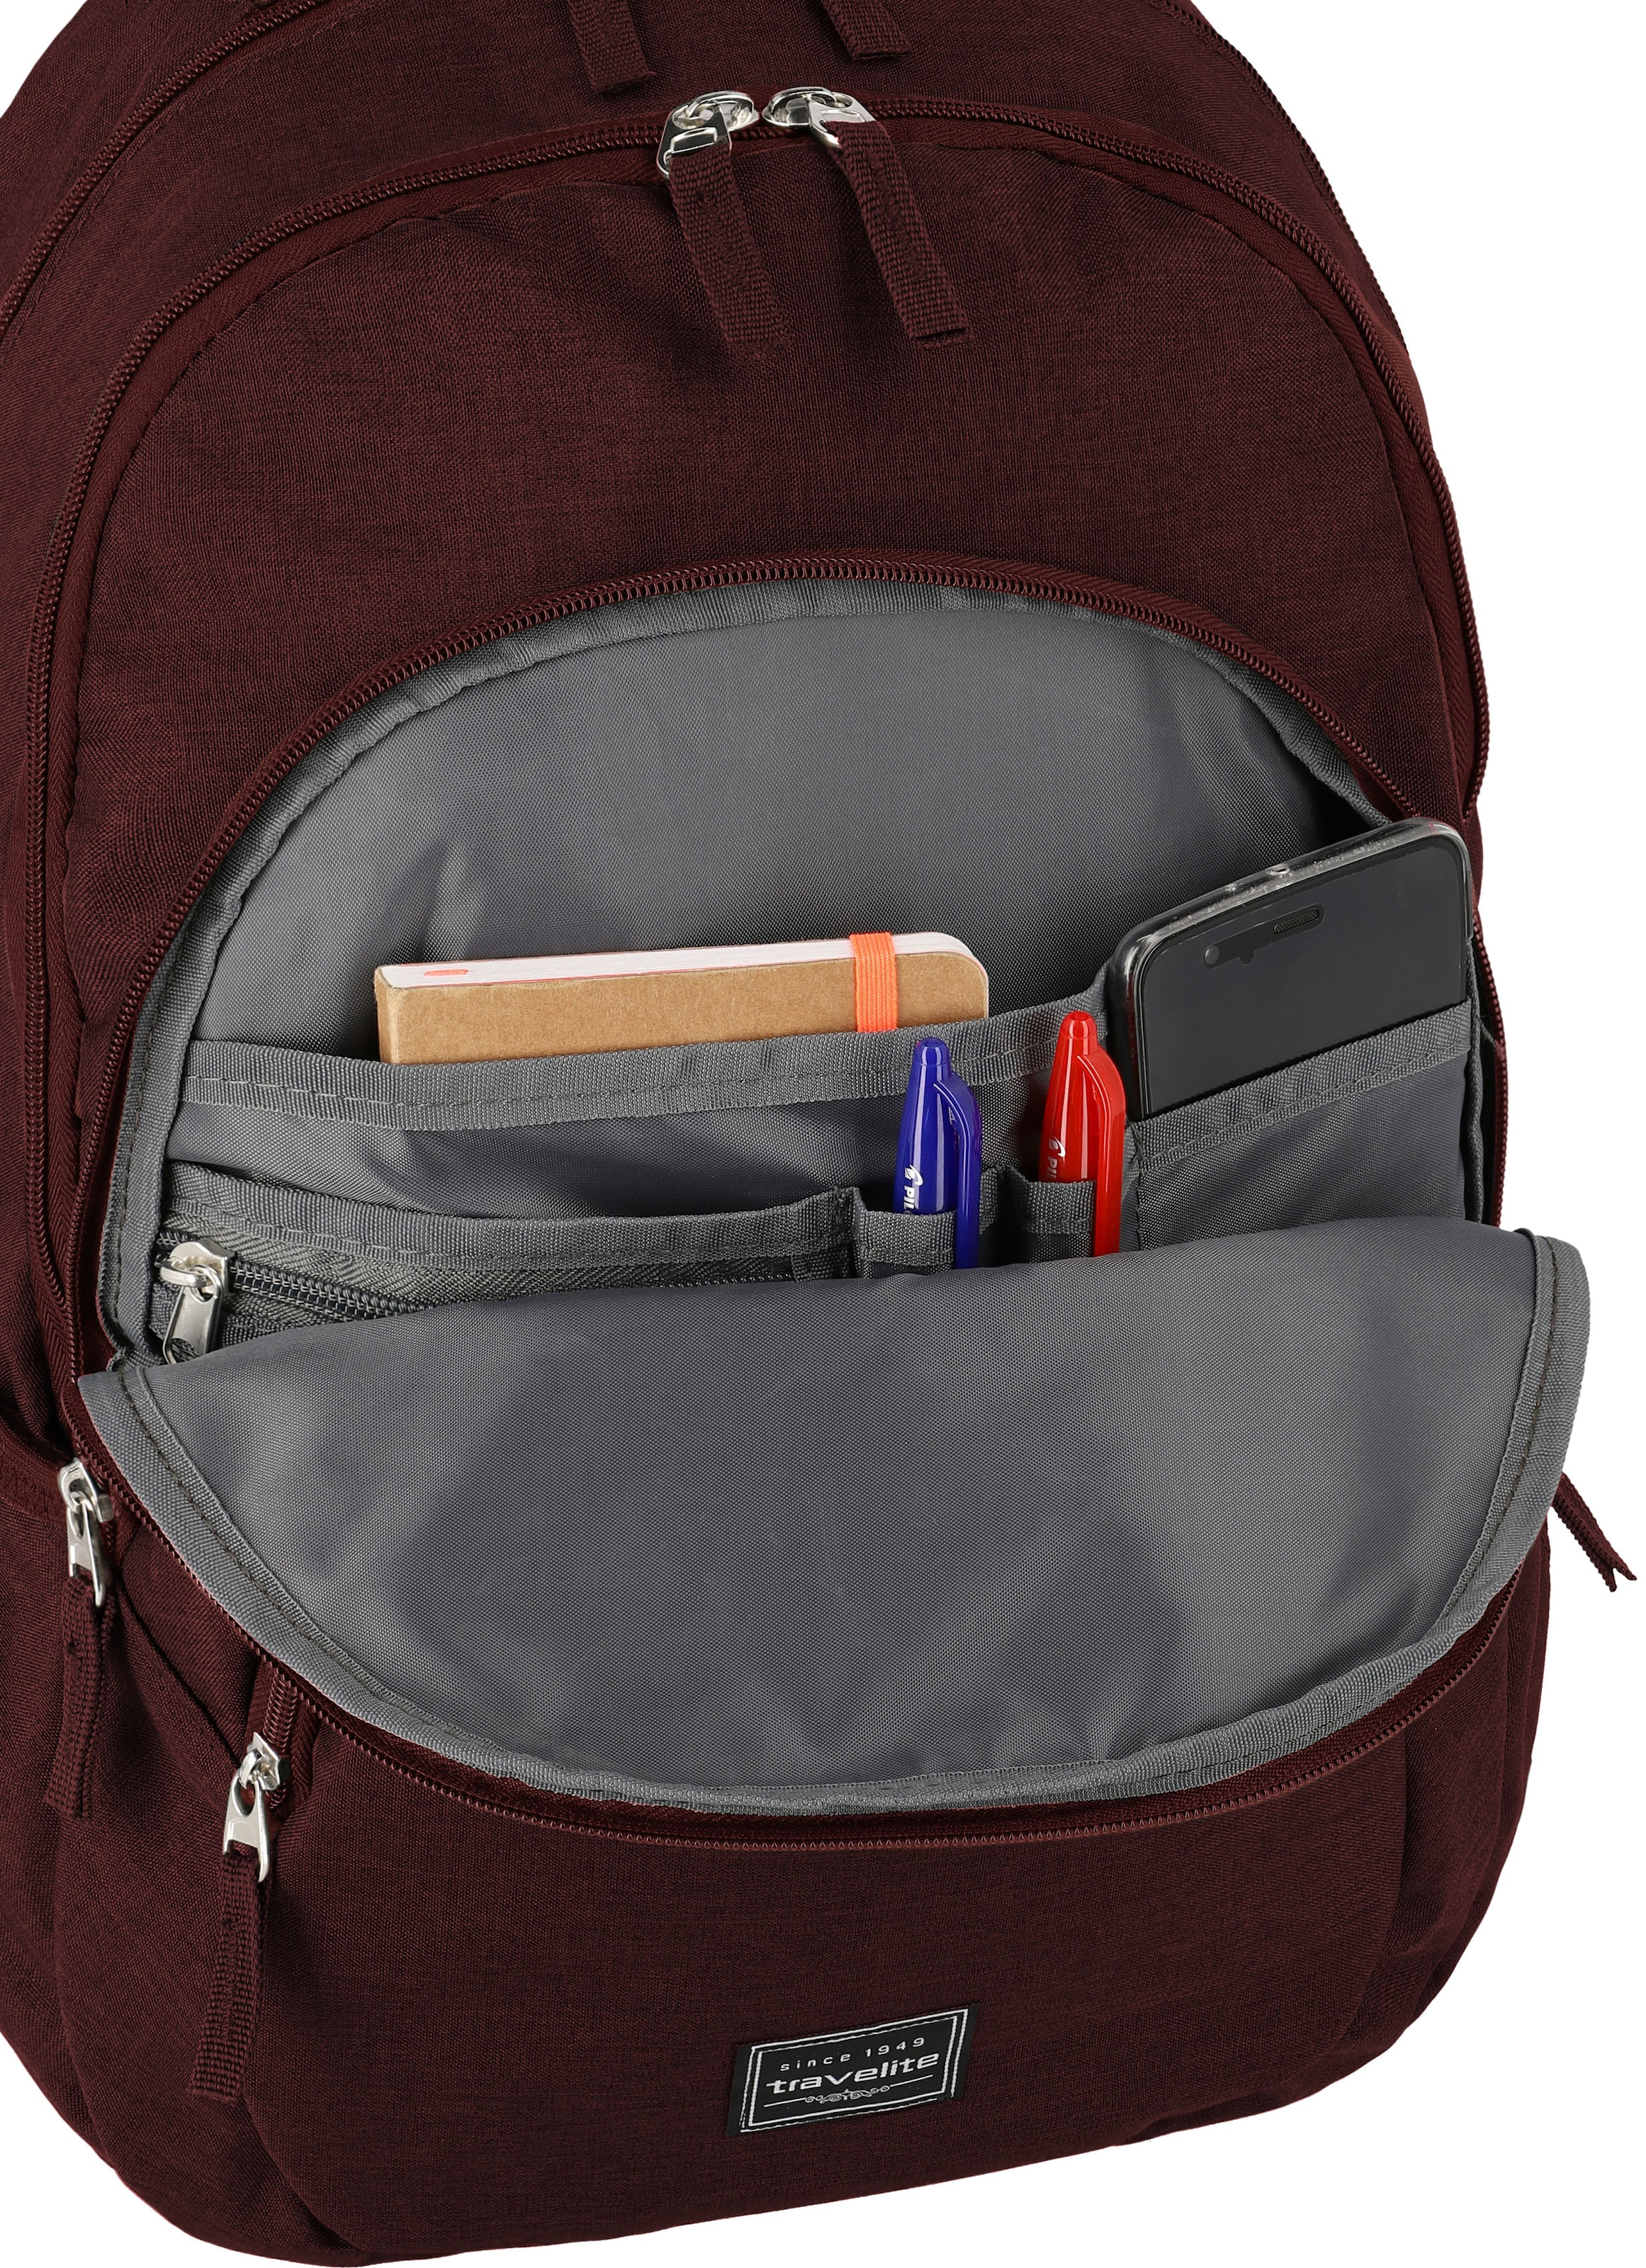 travelite Laptoprucksack »Basics, bordeaux«, Arbeitsrucksack Schulrucksack Freizeitrucksack mit 15-Zoll Laptopfach